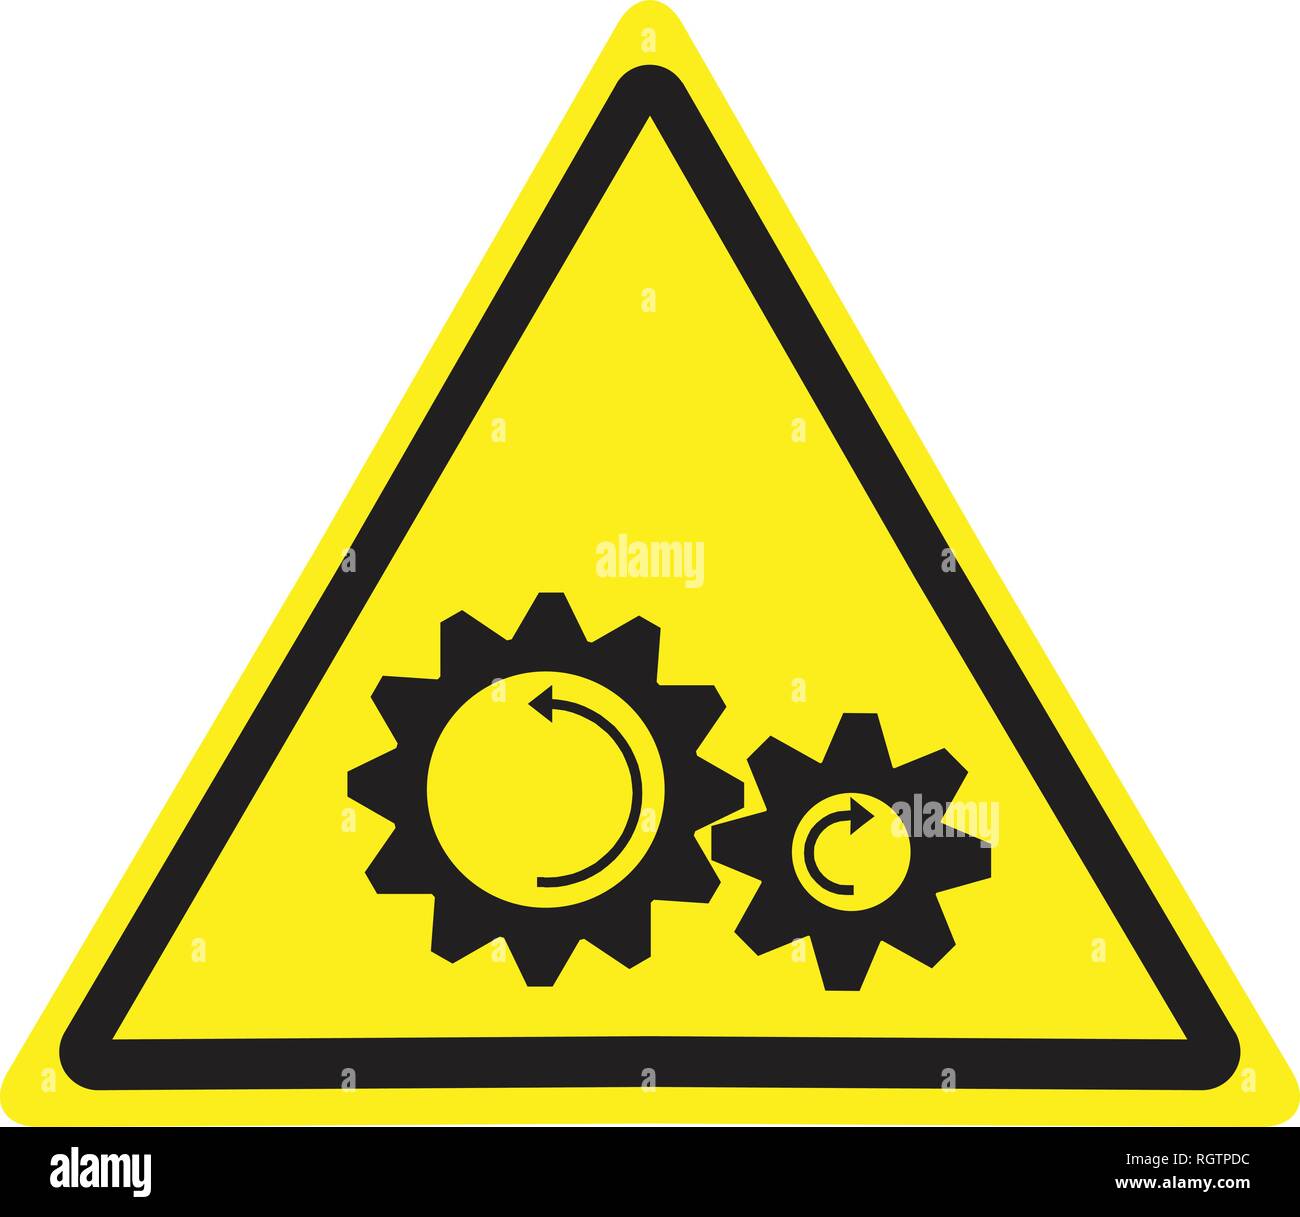 Warning sign with rotating parts hazard symbol. Stock Vector